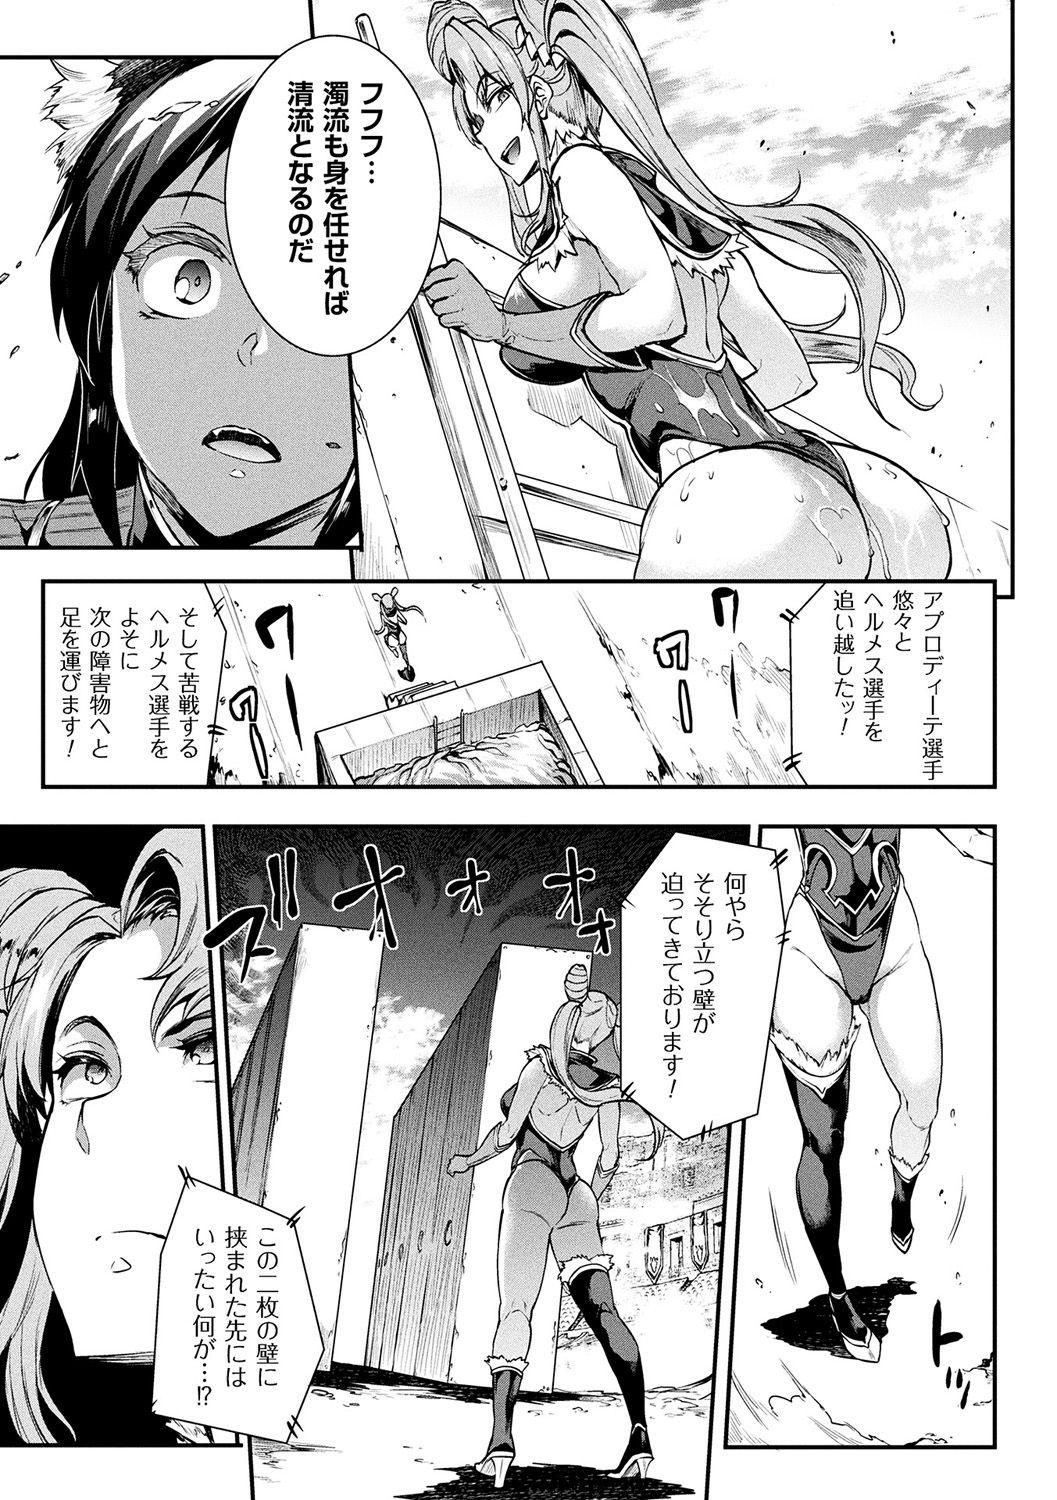 [Erect Sawaru] Raikou Shinki Igis Magia II -PANDRA saga 3rd ignition- + Denshi Shoseki Tokuten Digital Poster [Digital] 30